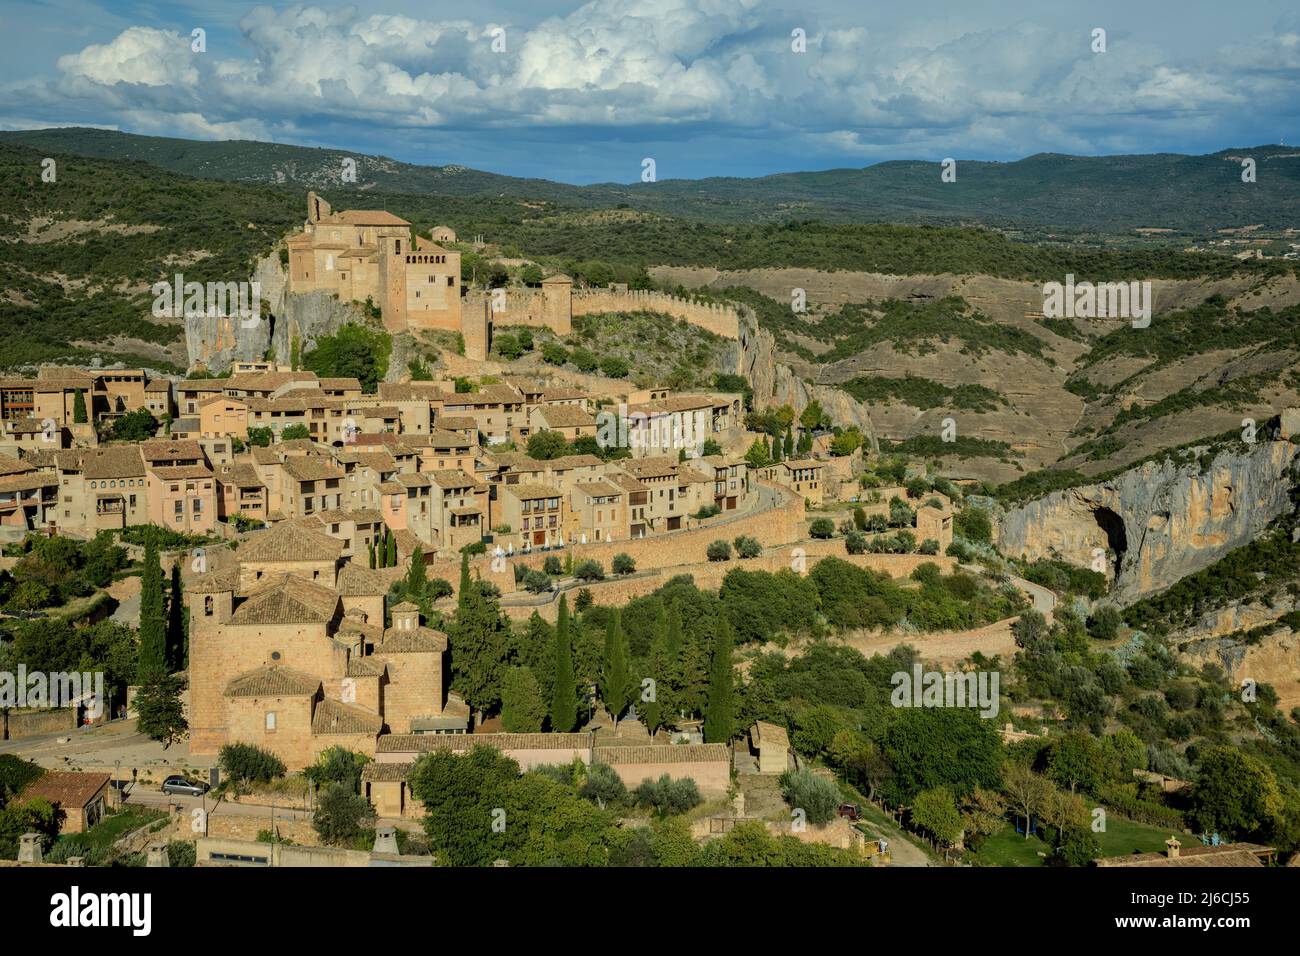 Le vieux village d'Alquézar, Huesca, dans le Parc naturel de la Sierra y Cañones de Guara, Espagne. Banque D'Images